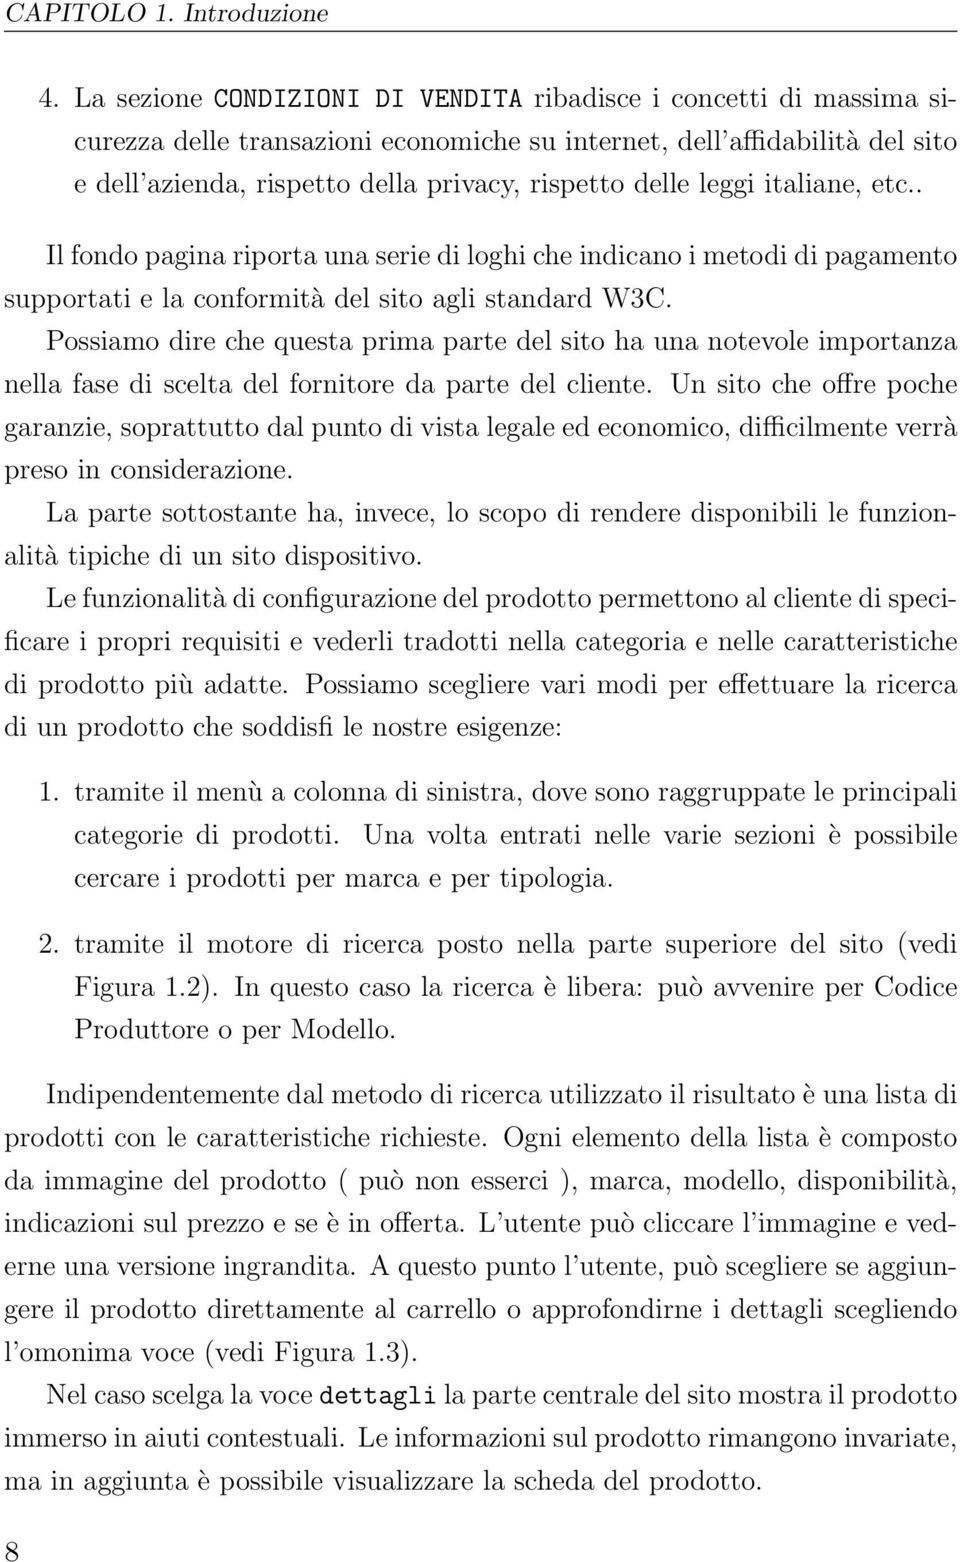 leggi italiane, etc.. Il fondo pagina riporta una serie di loghi che indicano i metodi di pagamento supportati e la conformità del sito agli standard W3C.